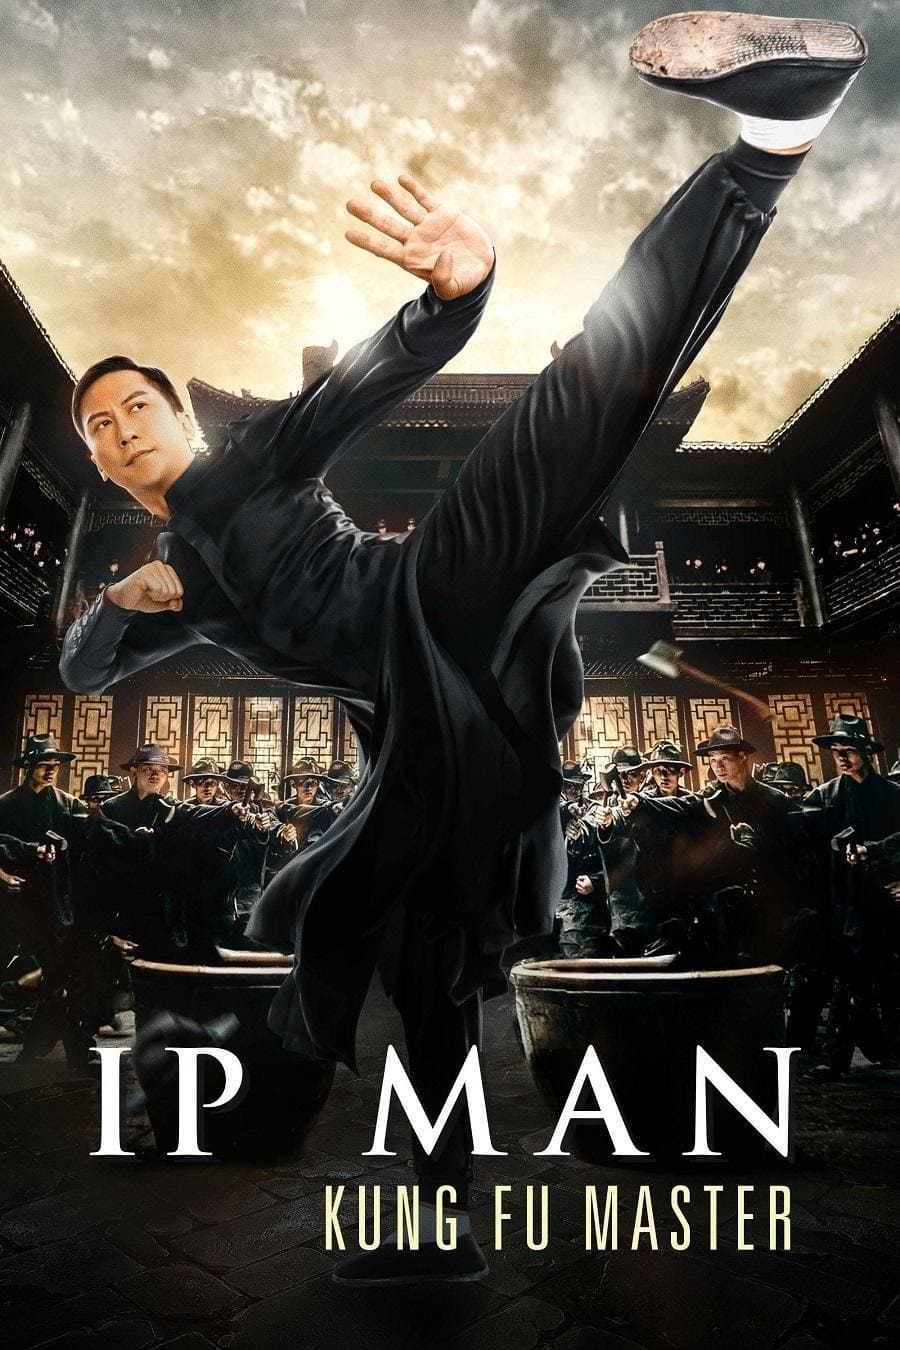 Diệp Vấn: Bậc Thầy Võ Thuật (Ip Man: Kung Fu Master) [2019]